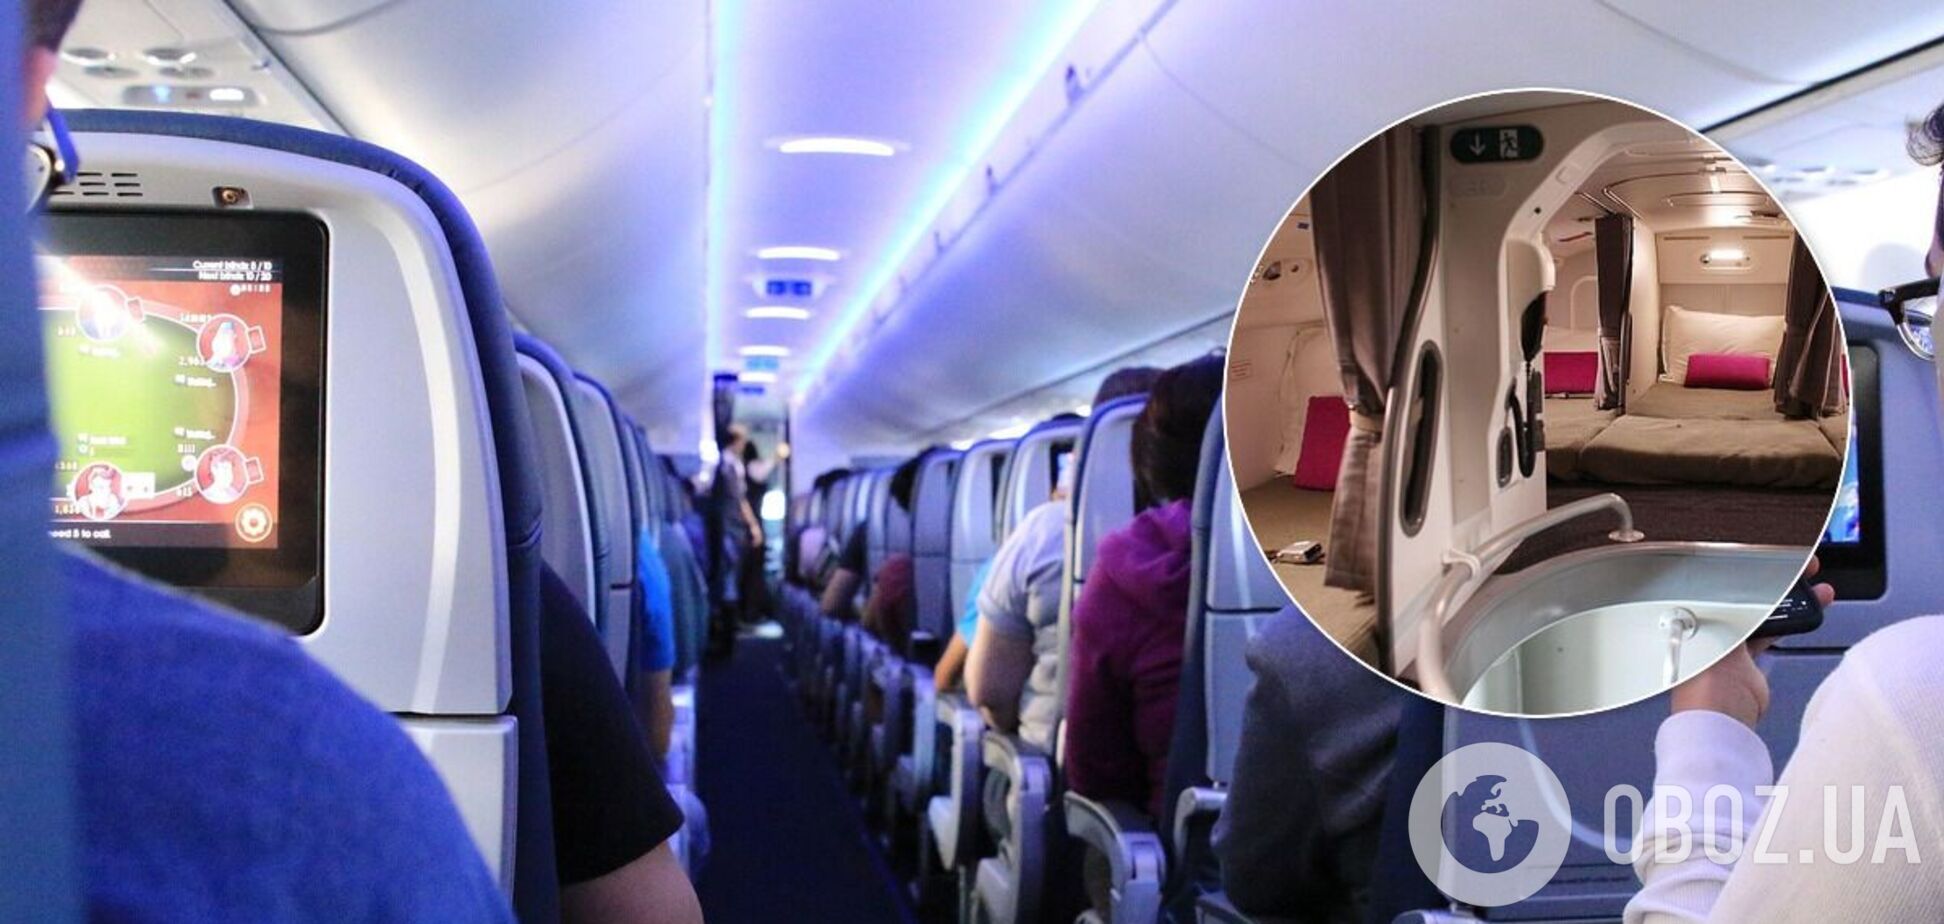 Как выглядят секретные комнаты для стюардесс в самолете